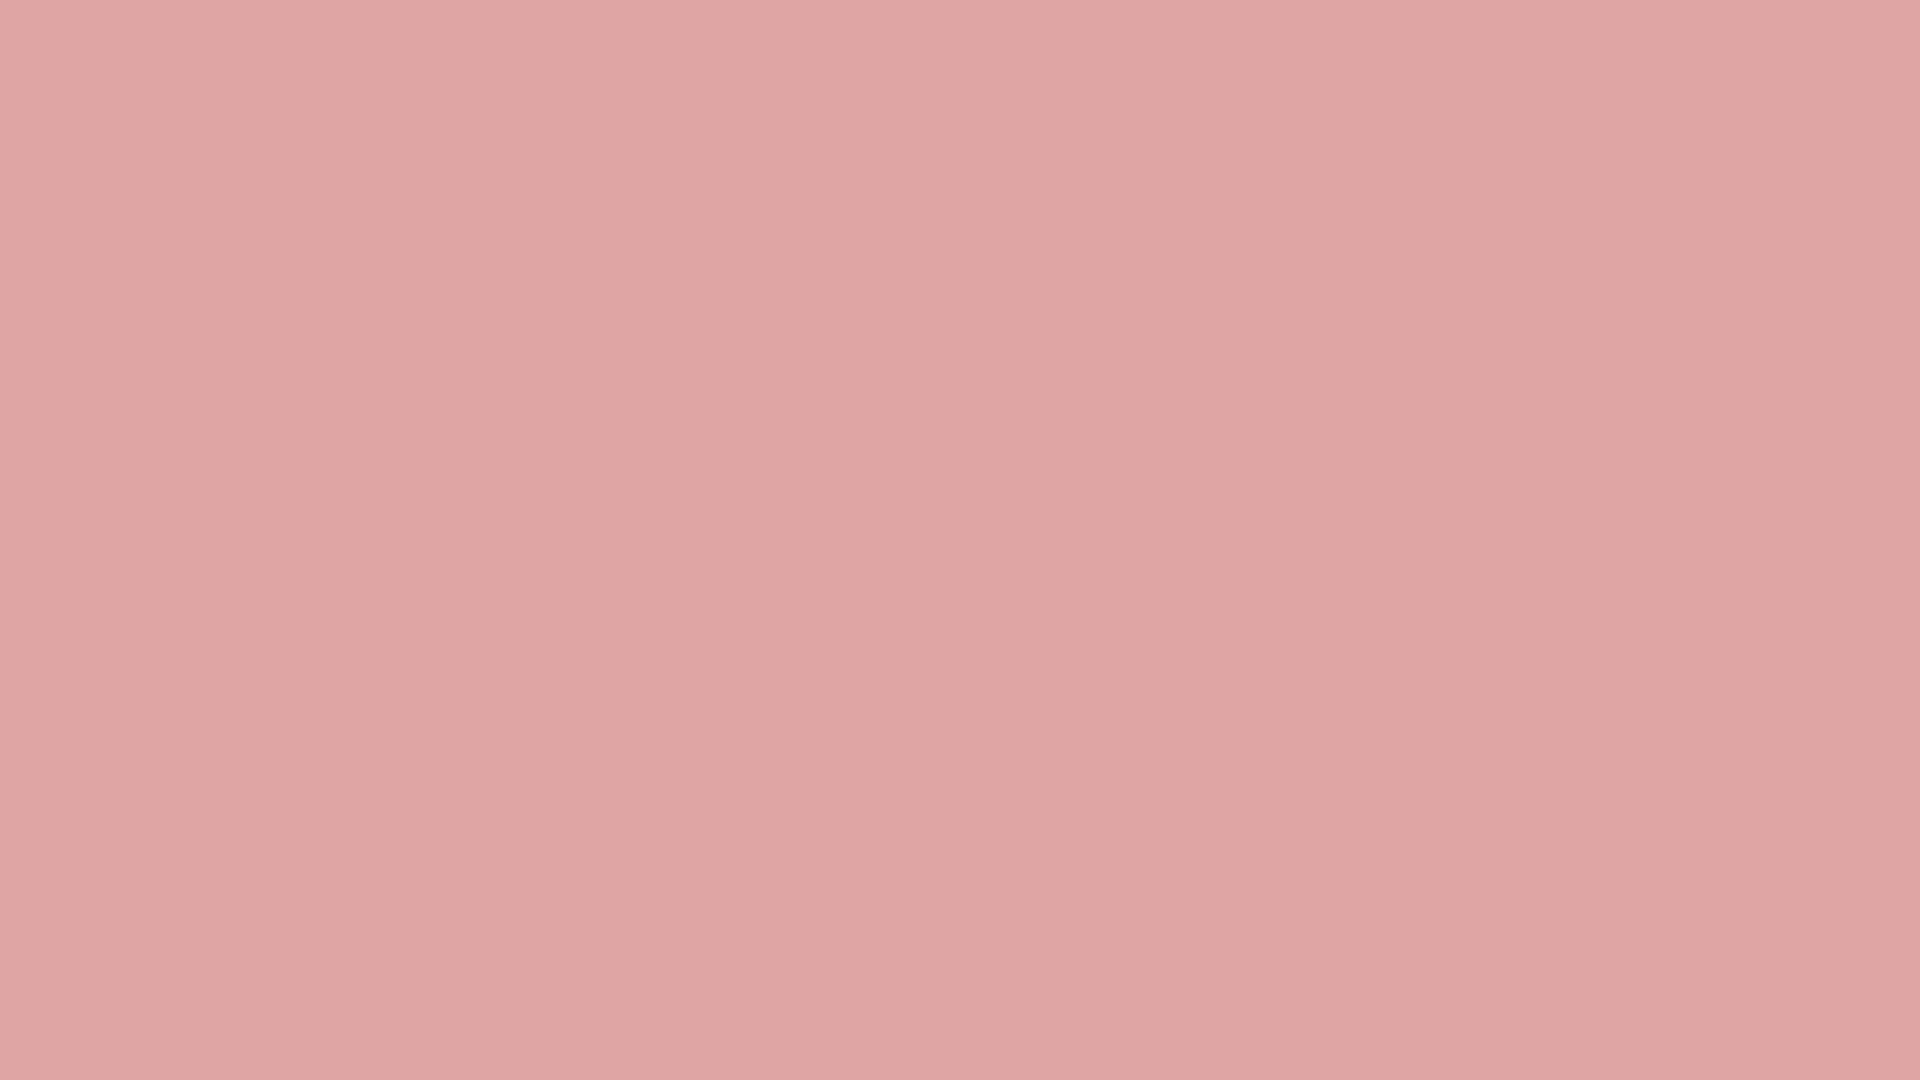 Solid Pink Desktop Wallpaper